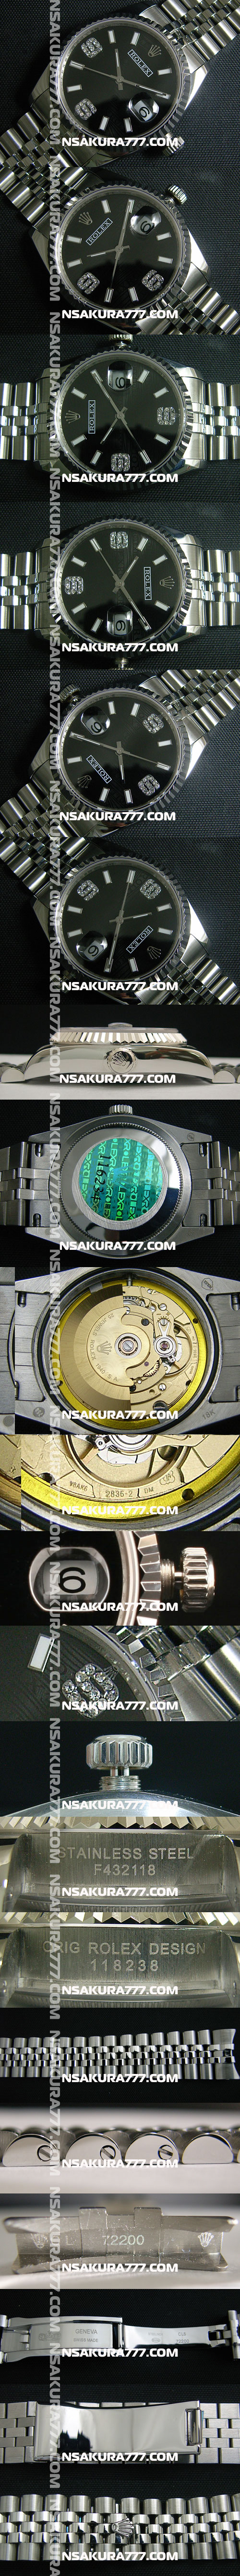 レプリカ時計ロレックスデイトジャストSwiss ETA社 2836-2 ムーブメント 28800振動 オートマティック(自動巻き) - ウインドウを閉じる